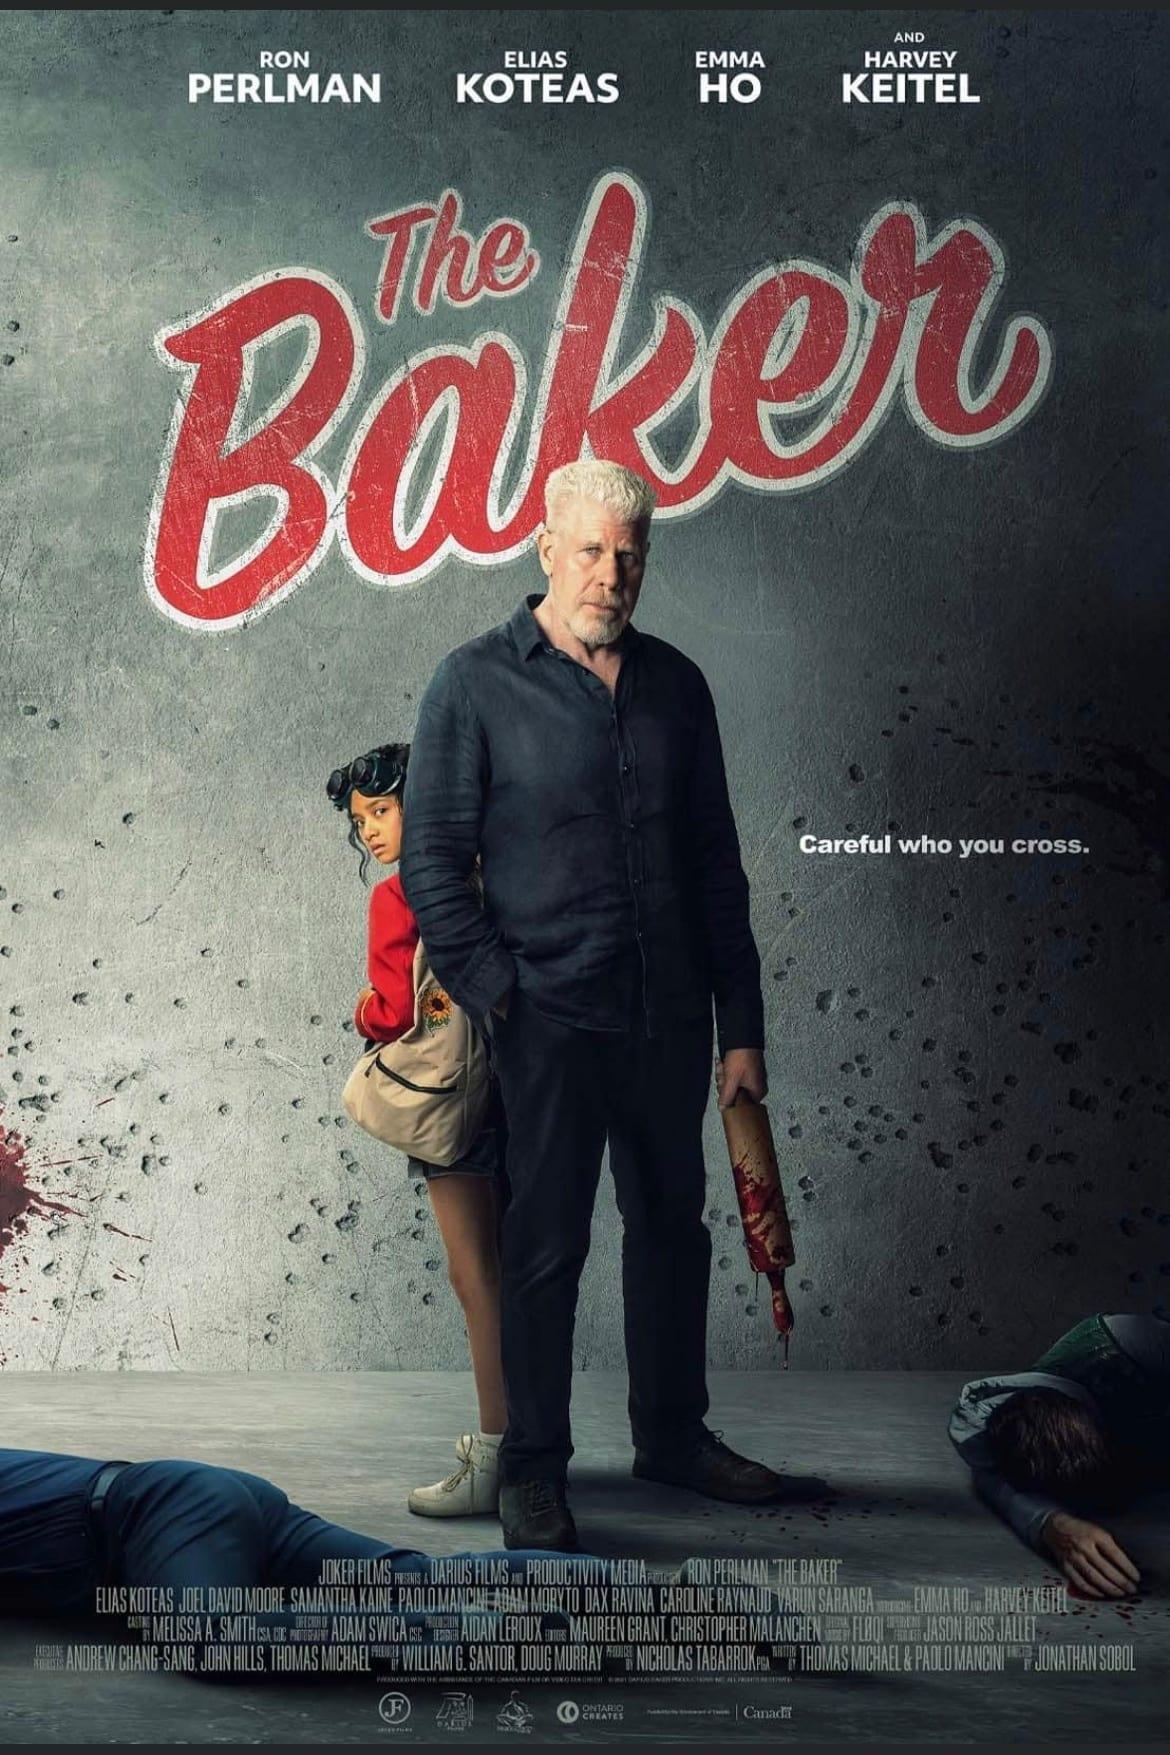 The Baker poster